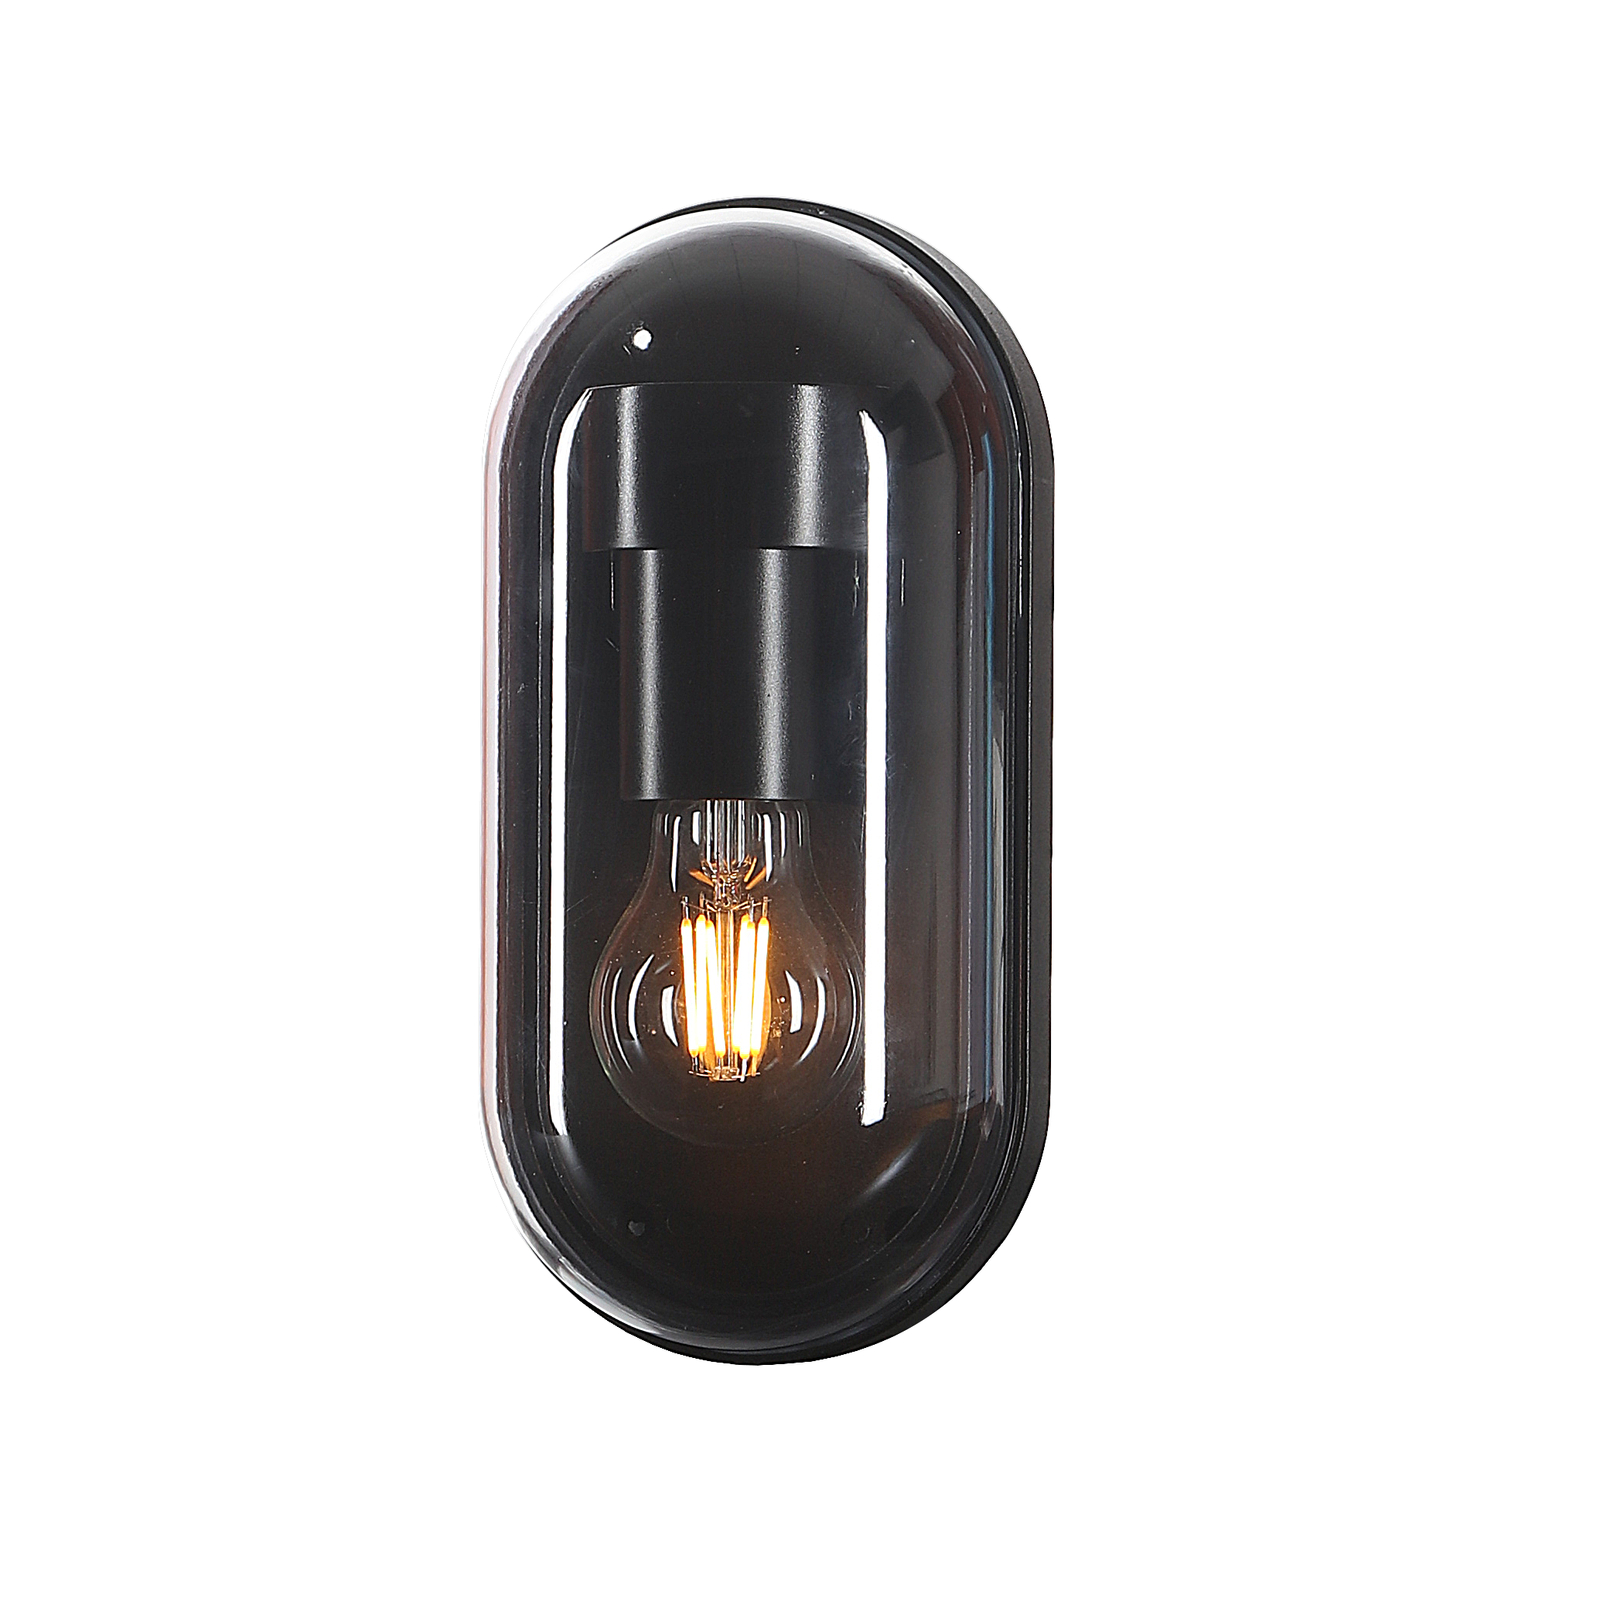 Lucande Serine outdoor wall light, 25.5 cm, black, aluminium